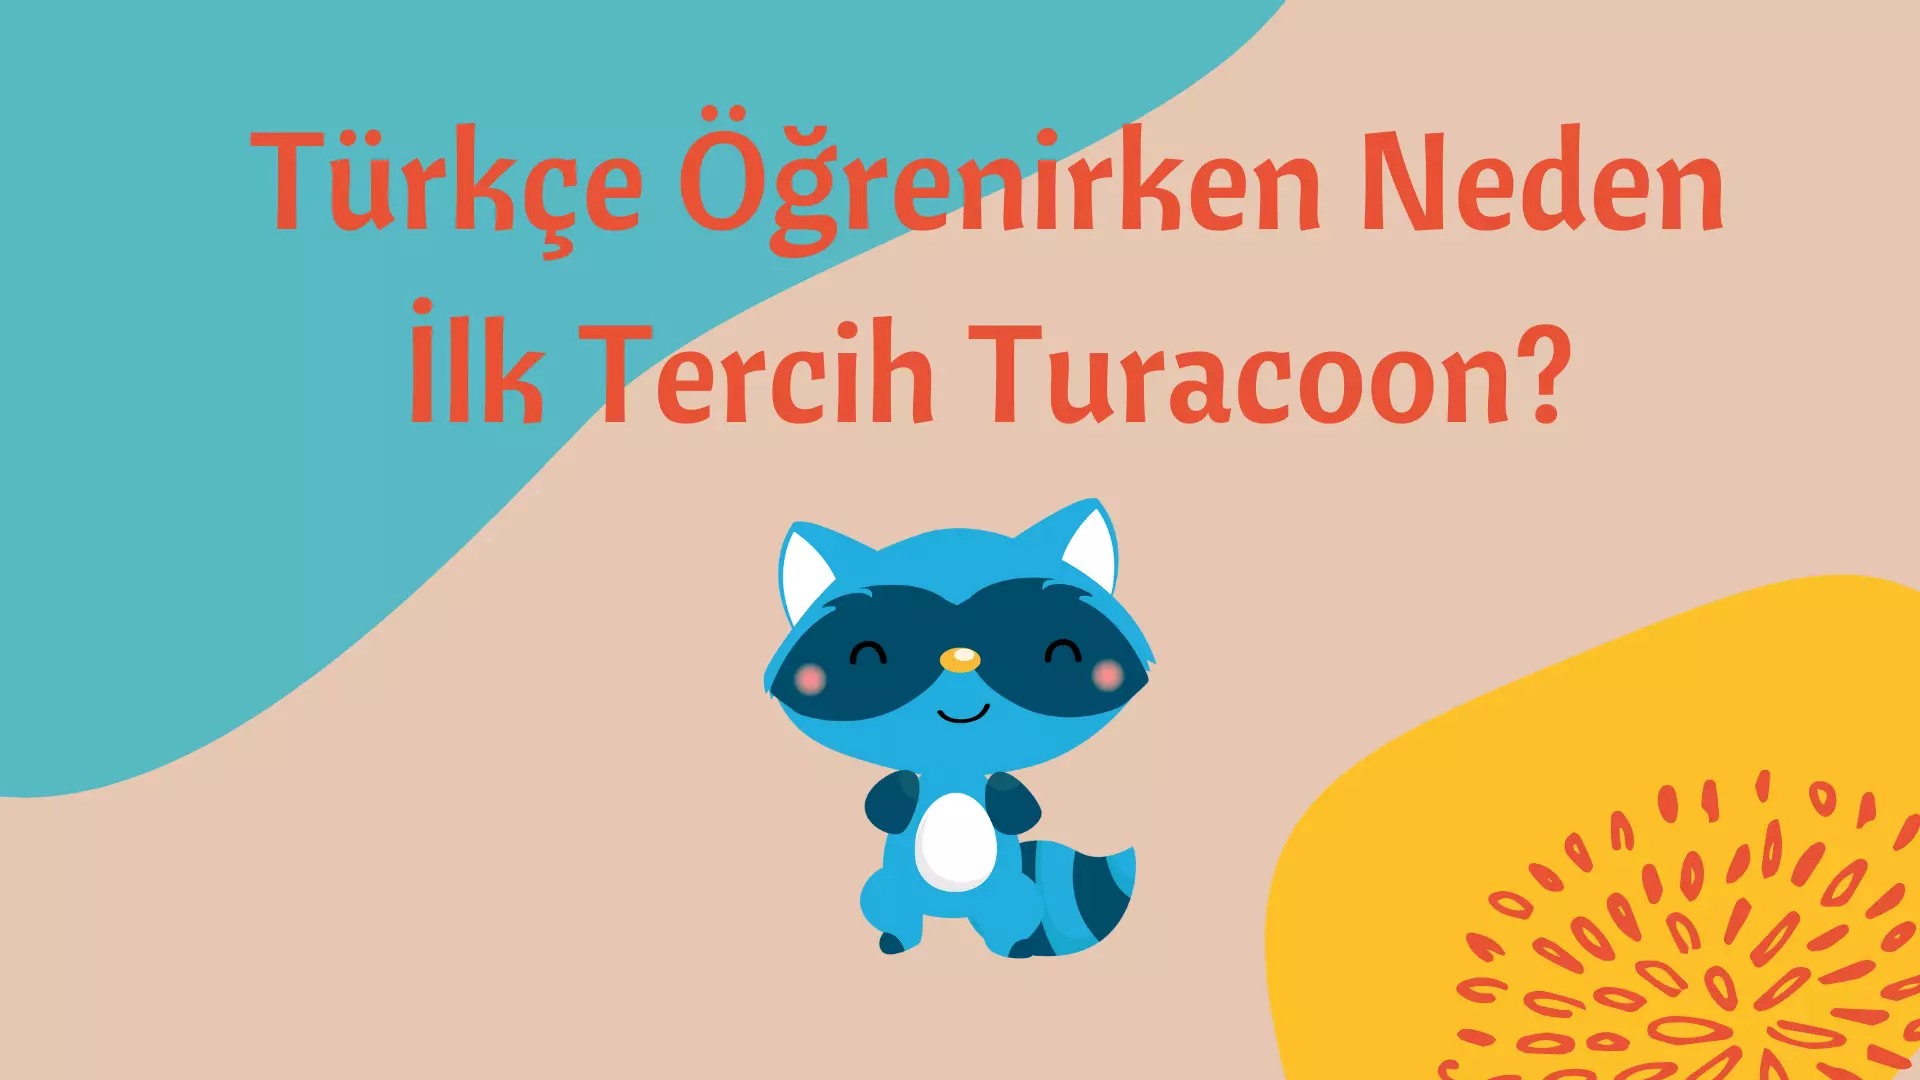 Türkçe Öğrenirken Neden İlk Tercih Turacoon?